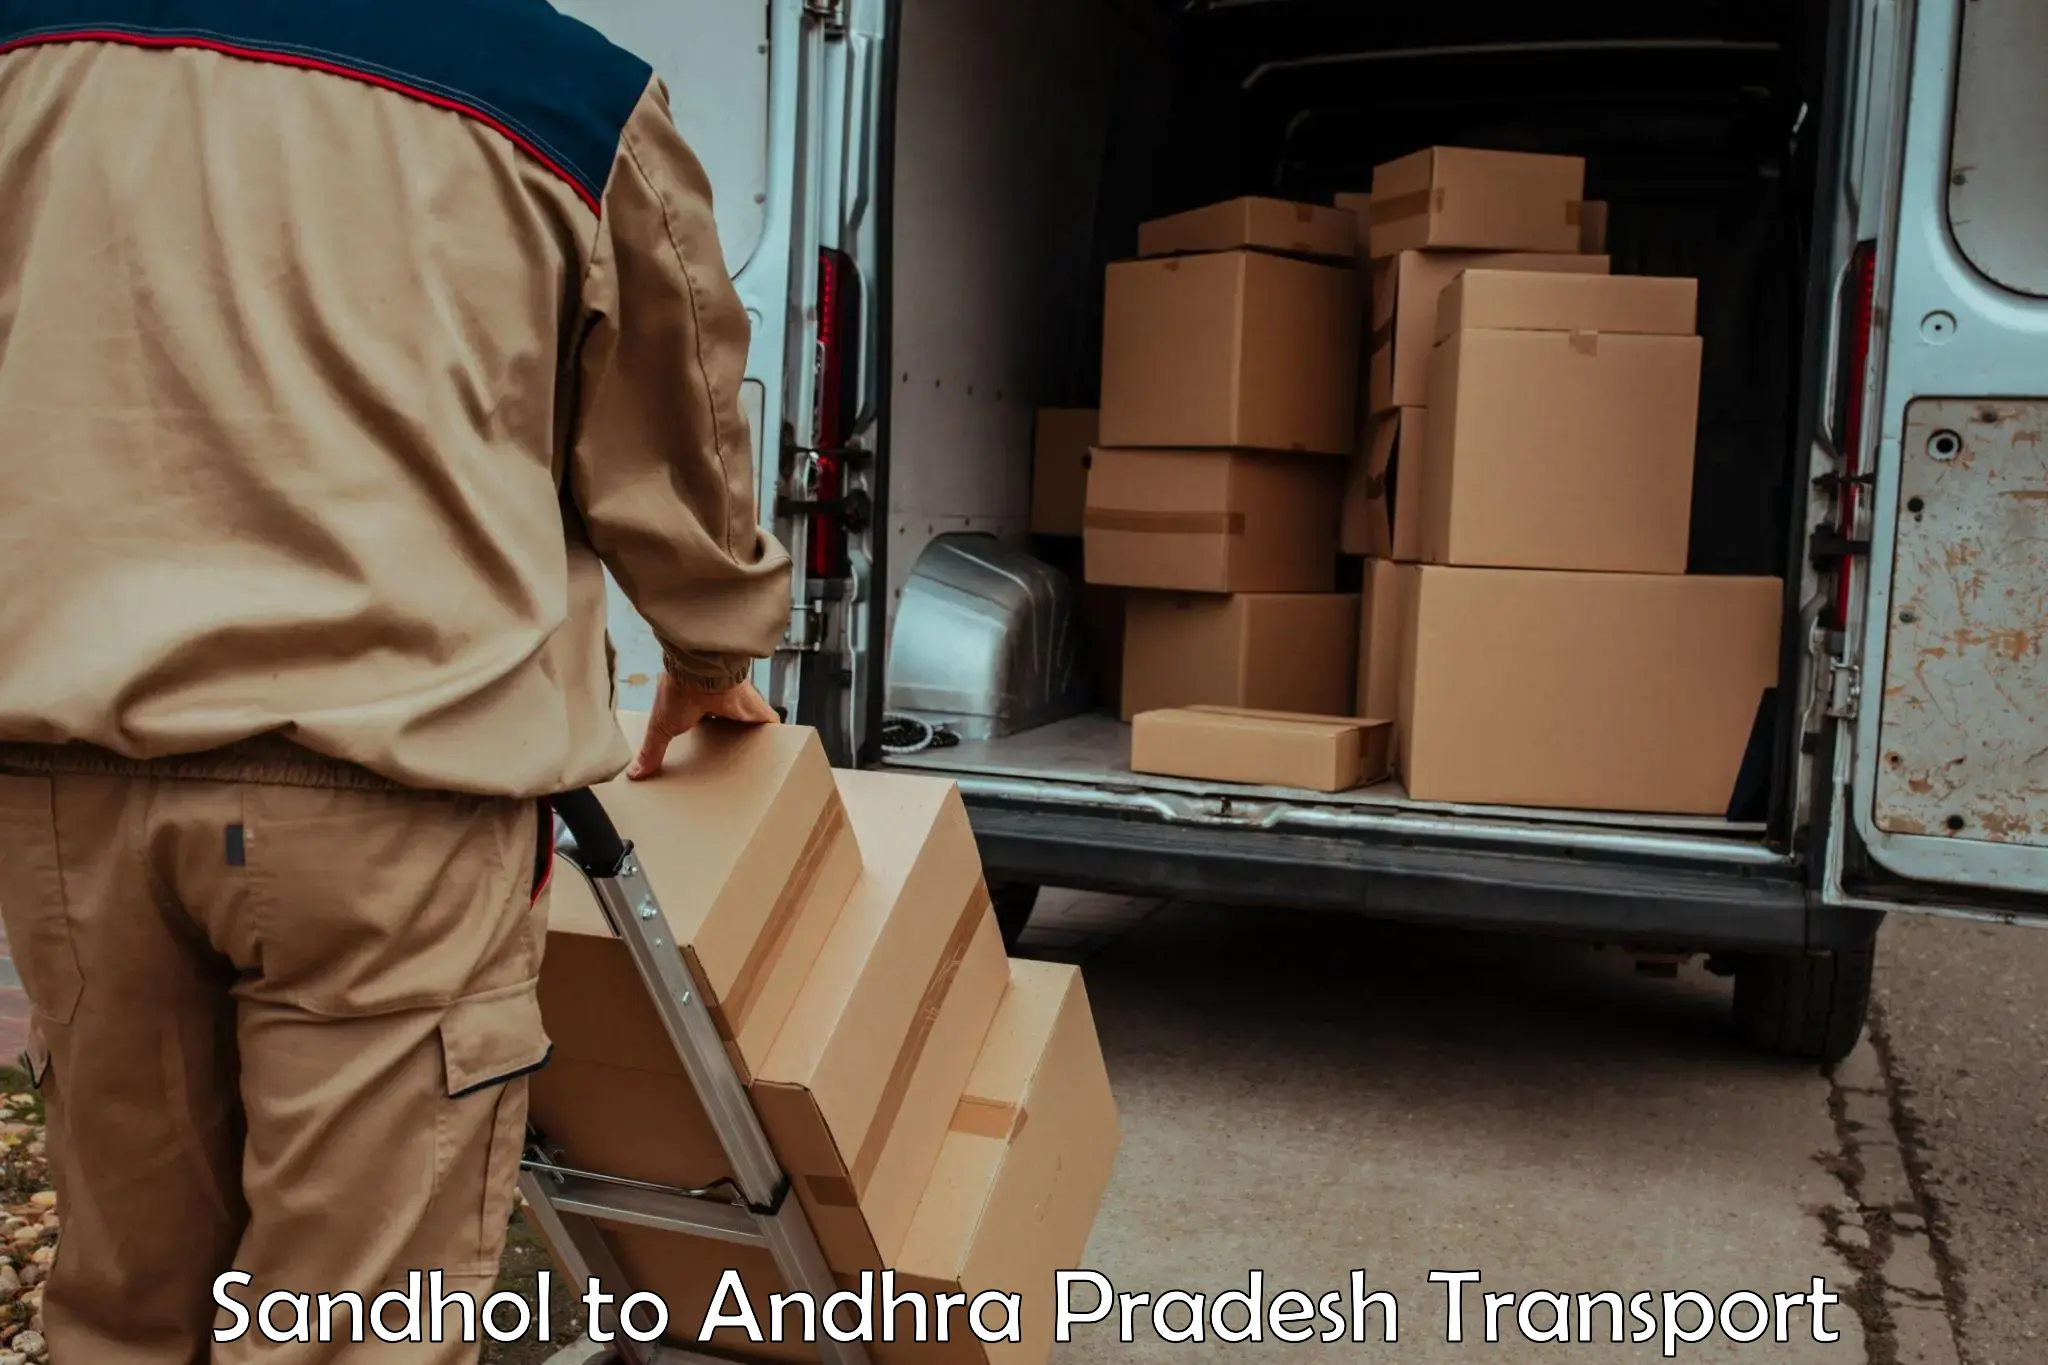 Daily parcel service transport Sandhol to Markapur